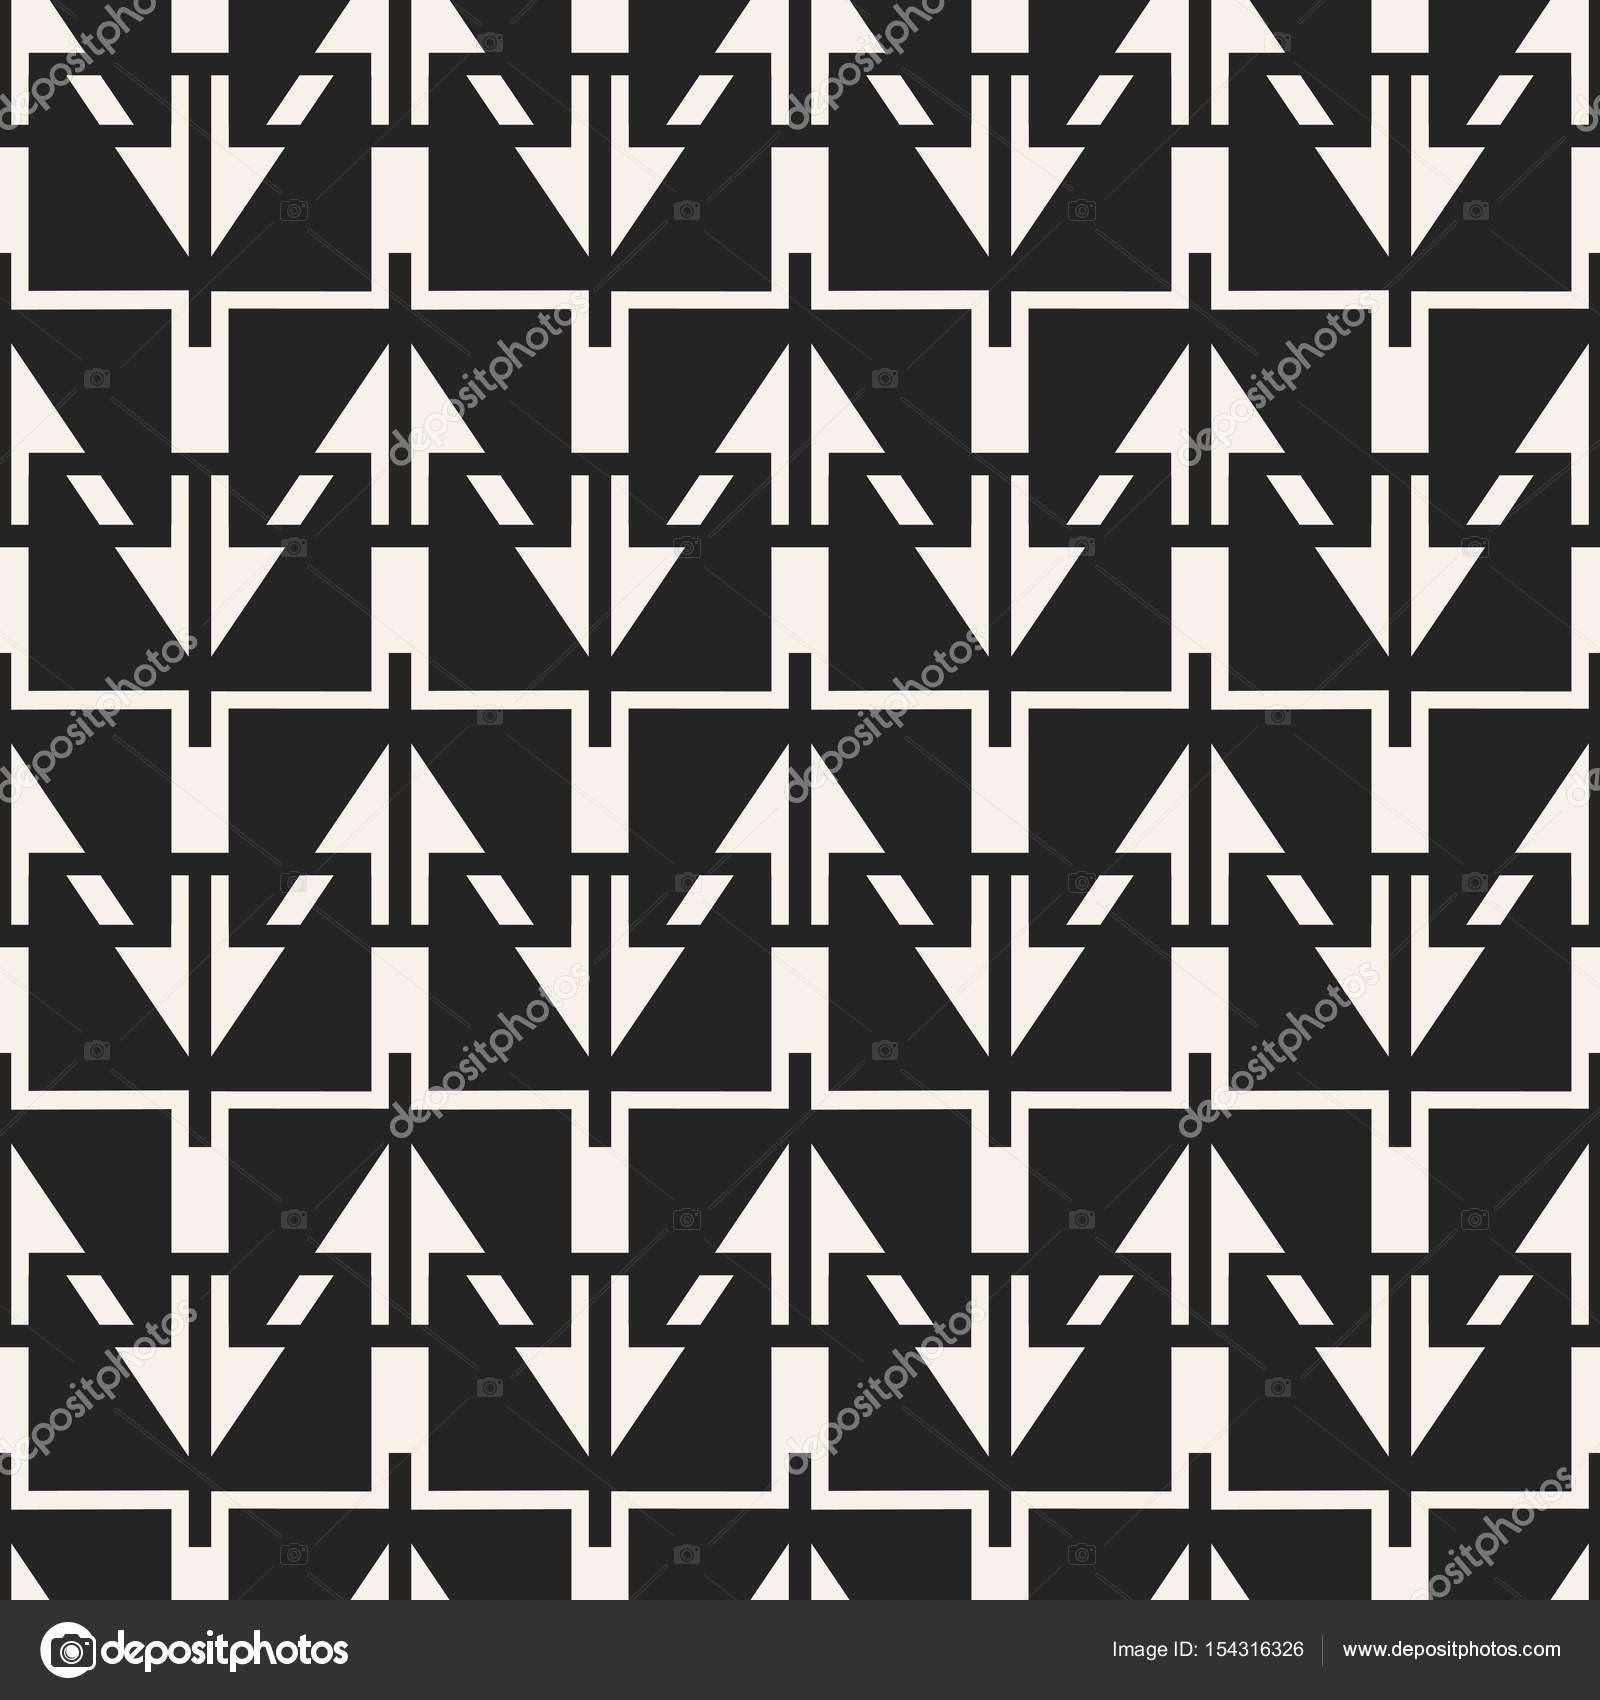 抽象的な概念ベクトルの白黒の幾何学模様 黒と白の最小限の背景 クリエイティブ イラスト テンプレートです シームレスなスタイリッシュなテクスチャです 壁紙 表面 ウェブ デザイン テキスタイル 装飾用 ストックベクター C Mikhail Grachikov